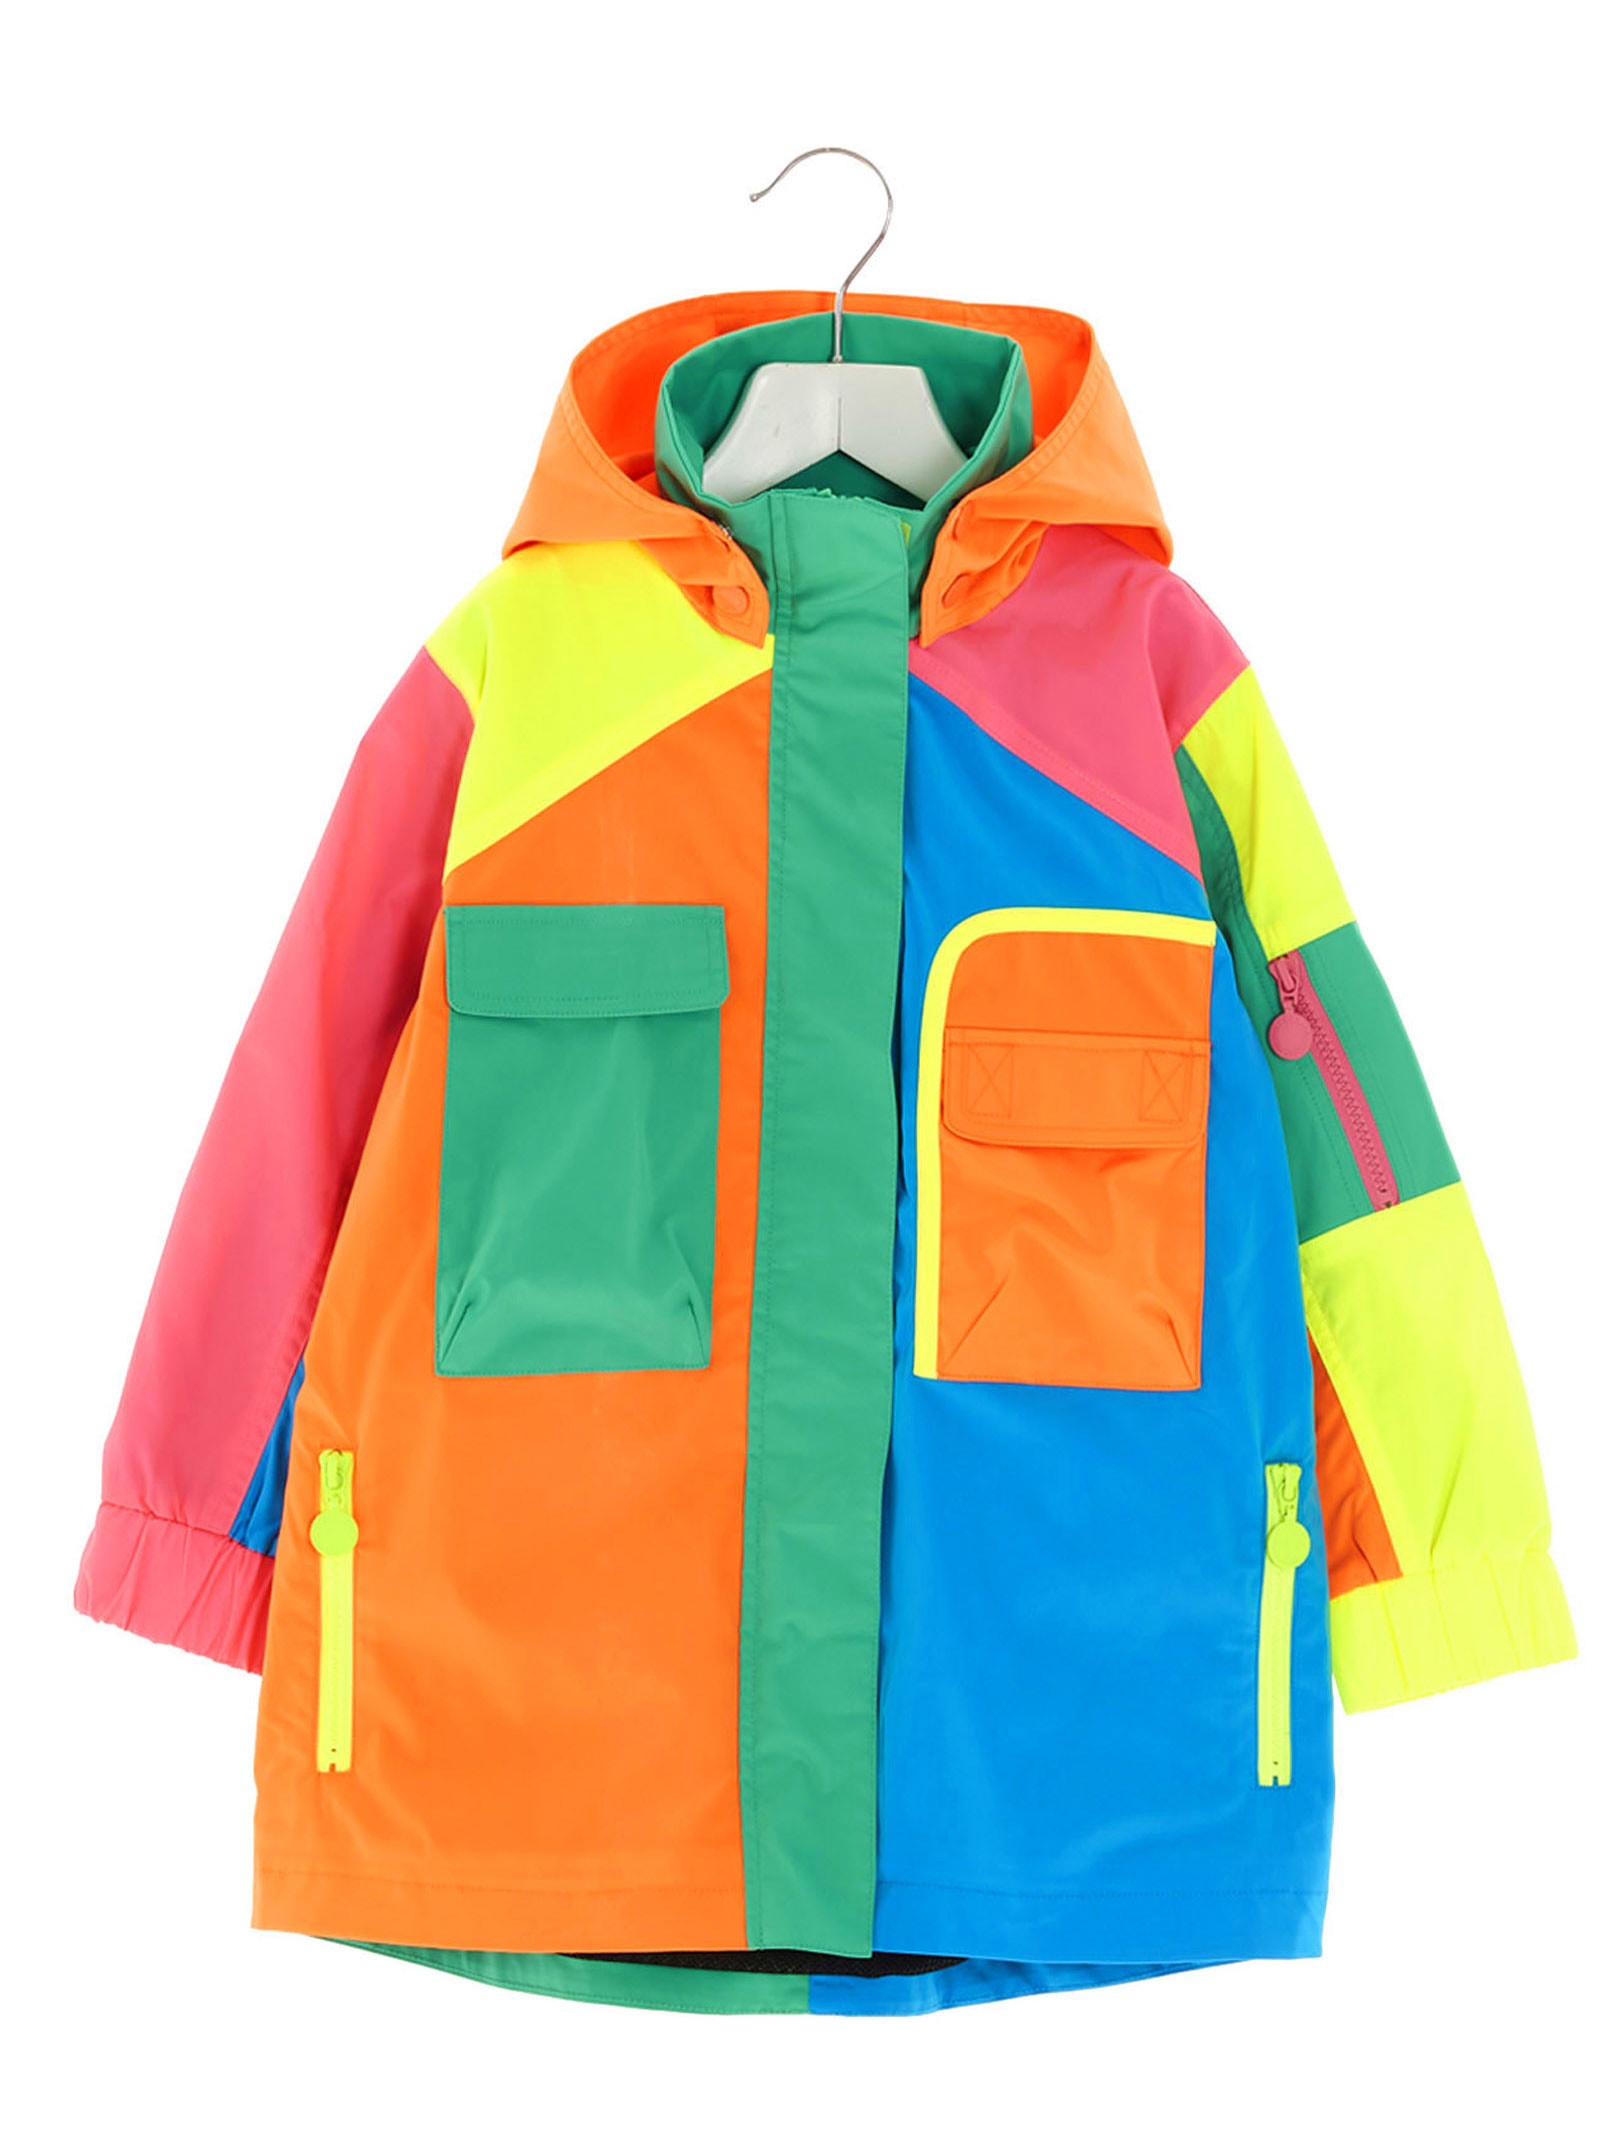 Stella McCartney Kids sport Jacket